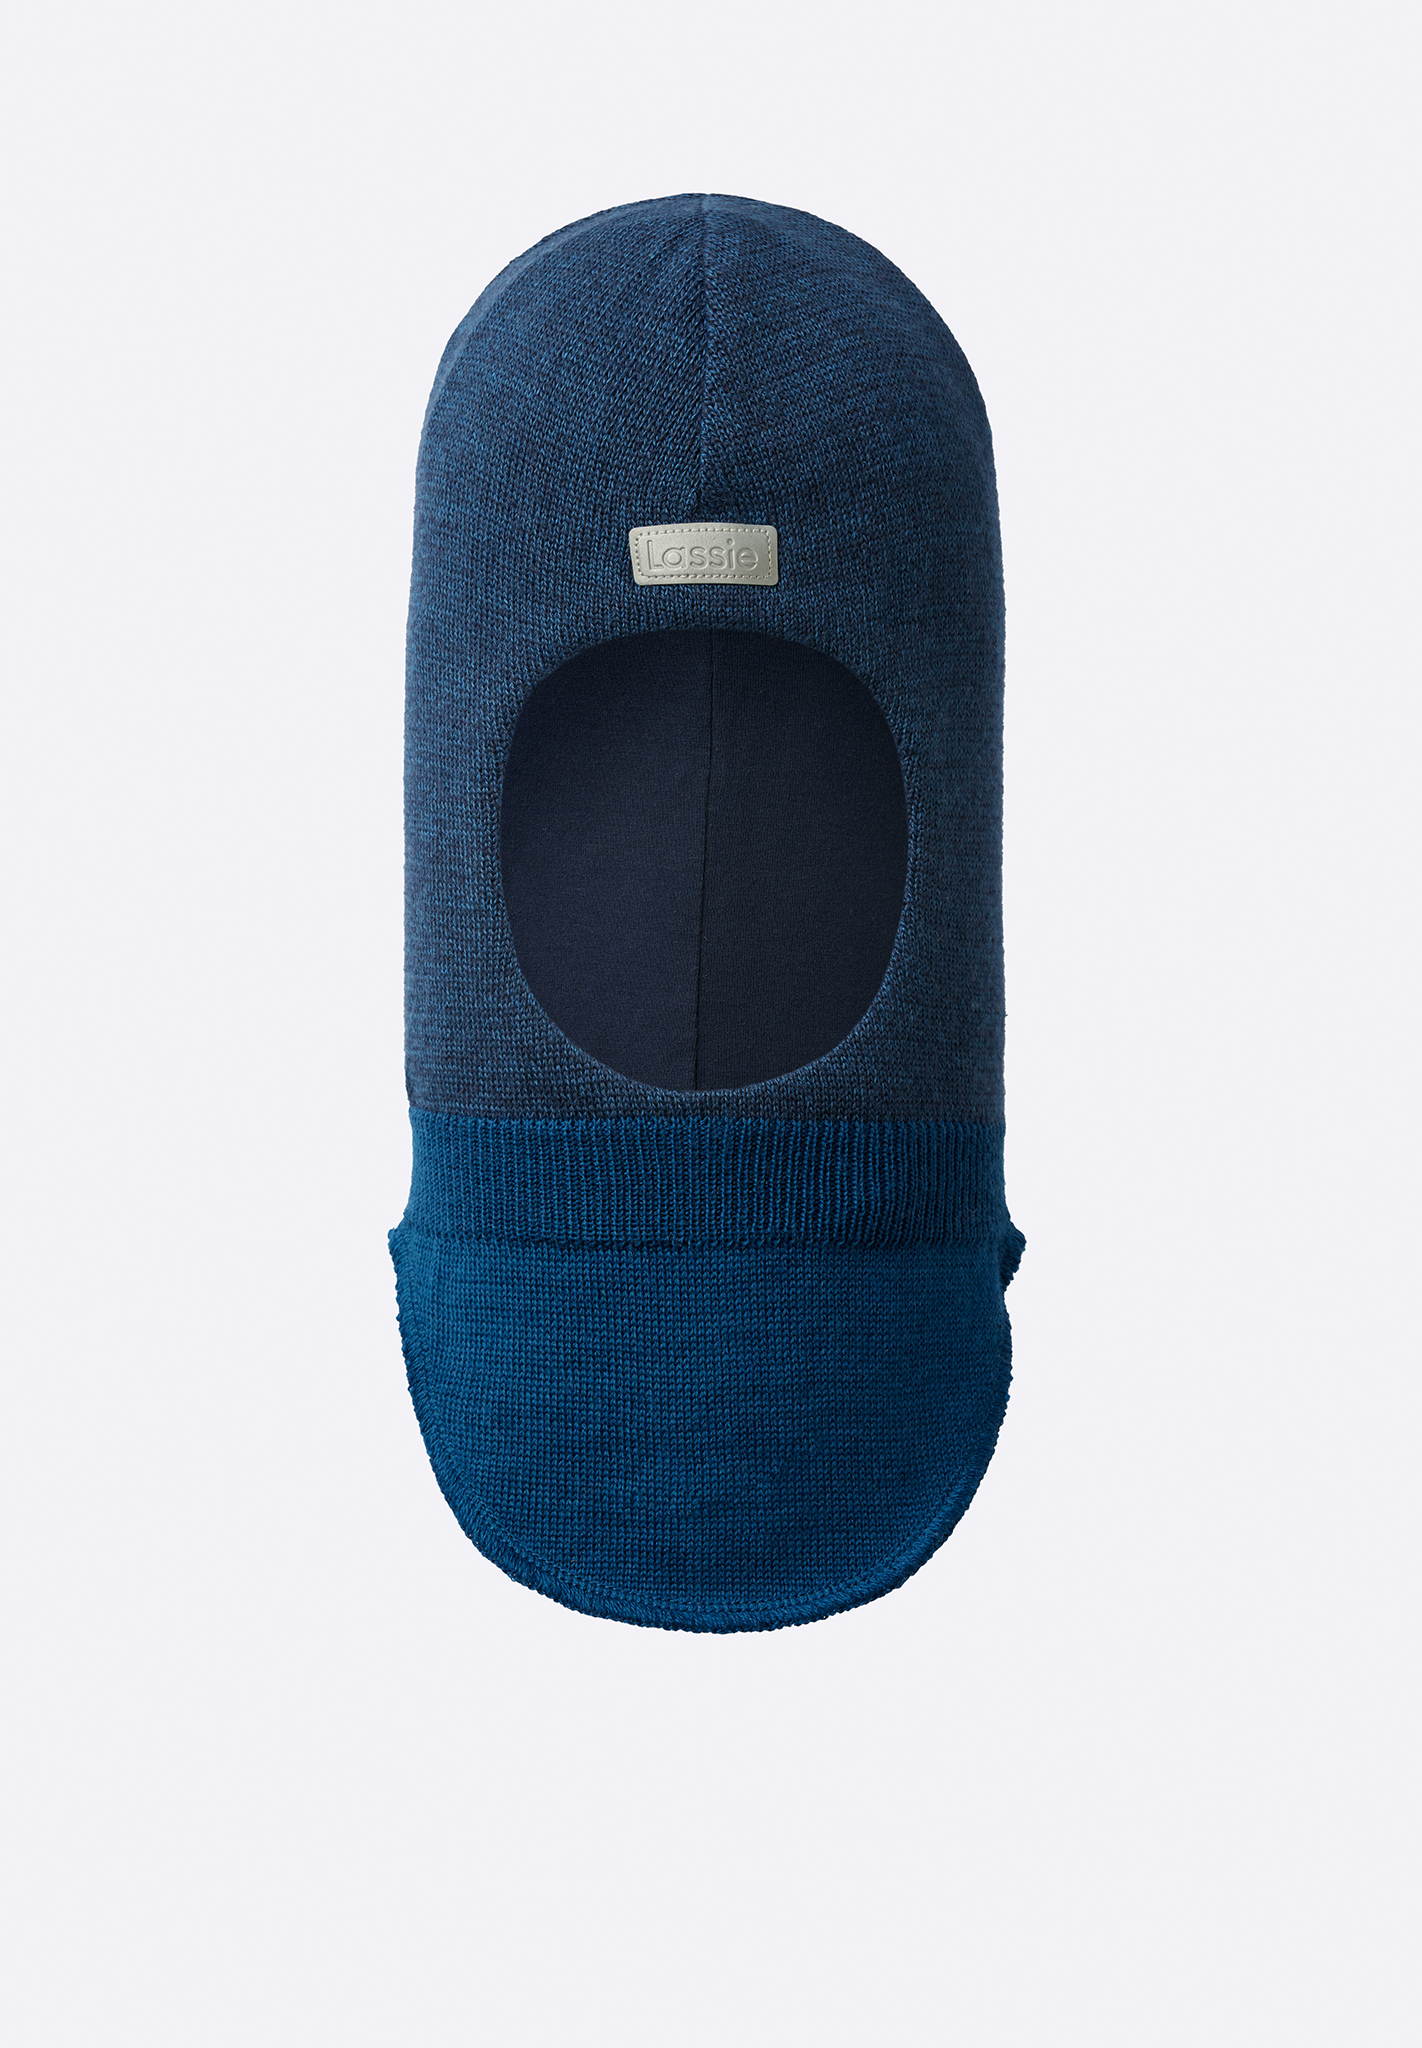 Шапка-шлем Lassie для мальчиков, синяя, размер 052, 7300016B6821052 синяя шапка шлем из шерсти jan